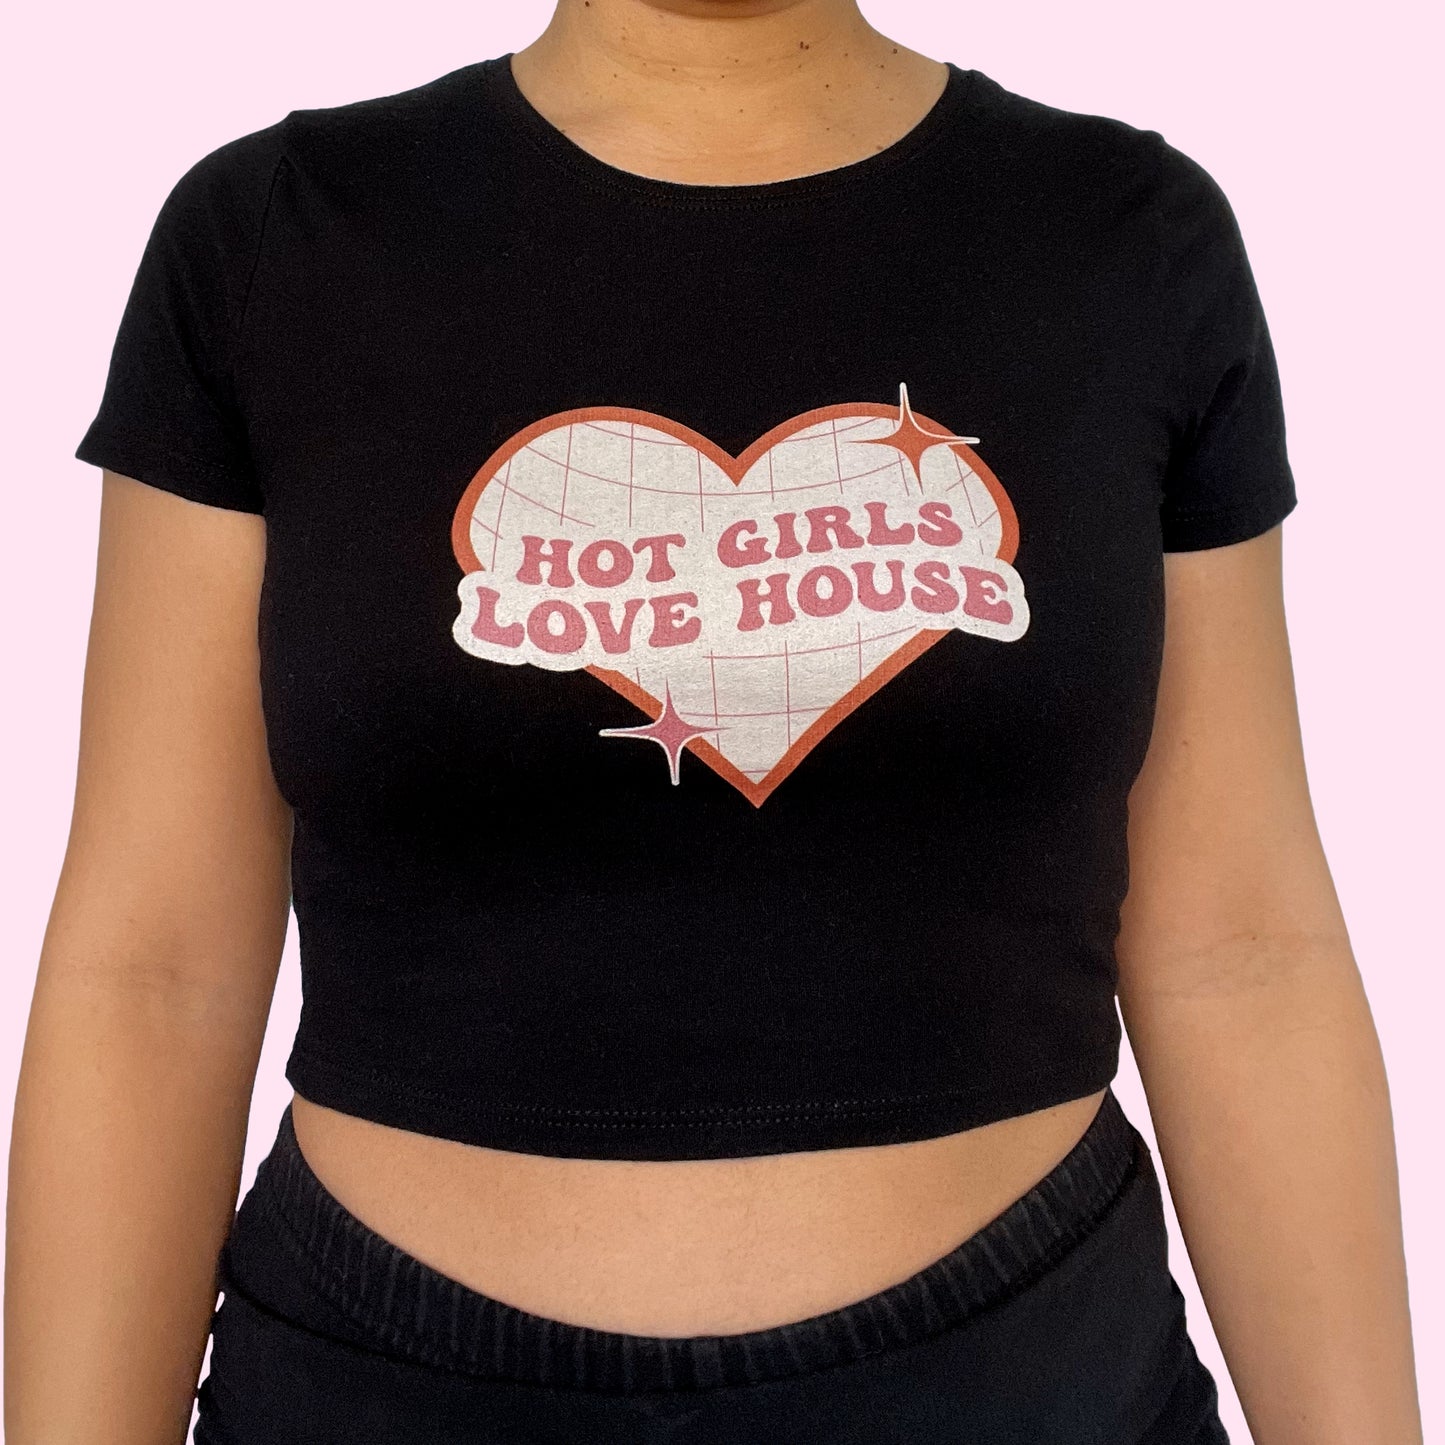 Hot Girls Love House Women’s Crop Top Baby Tee